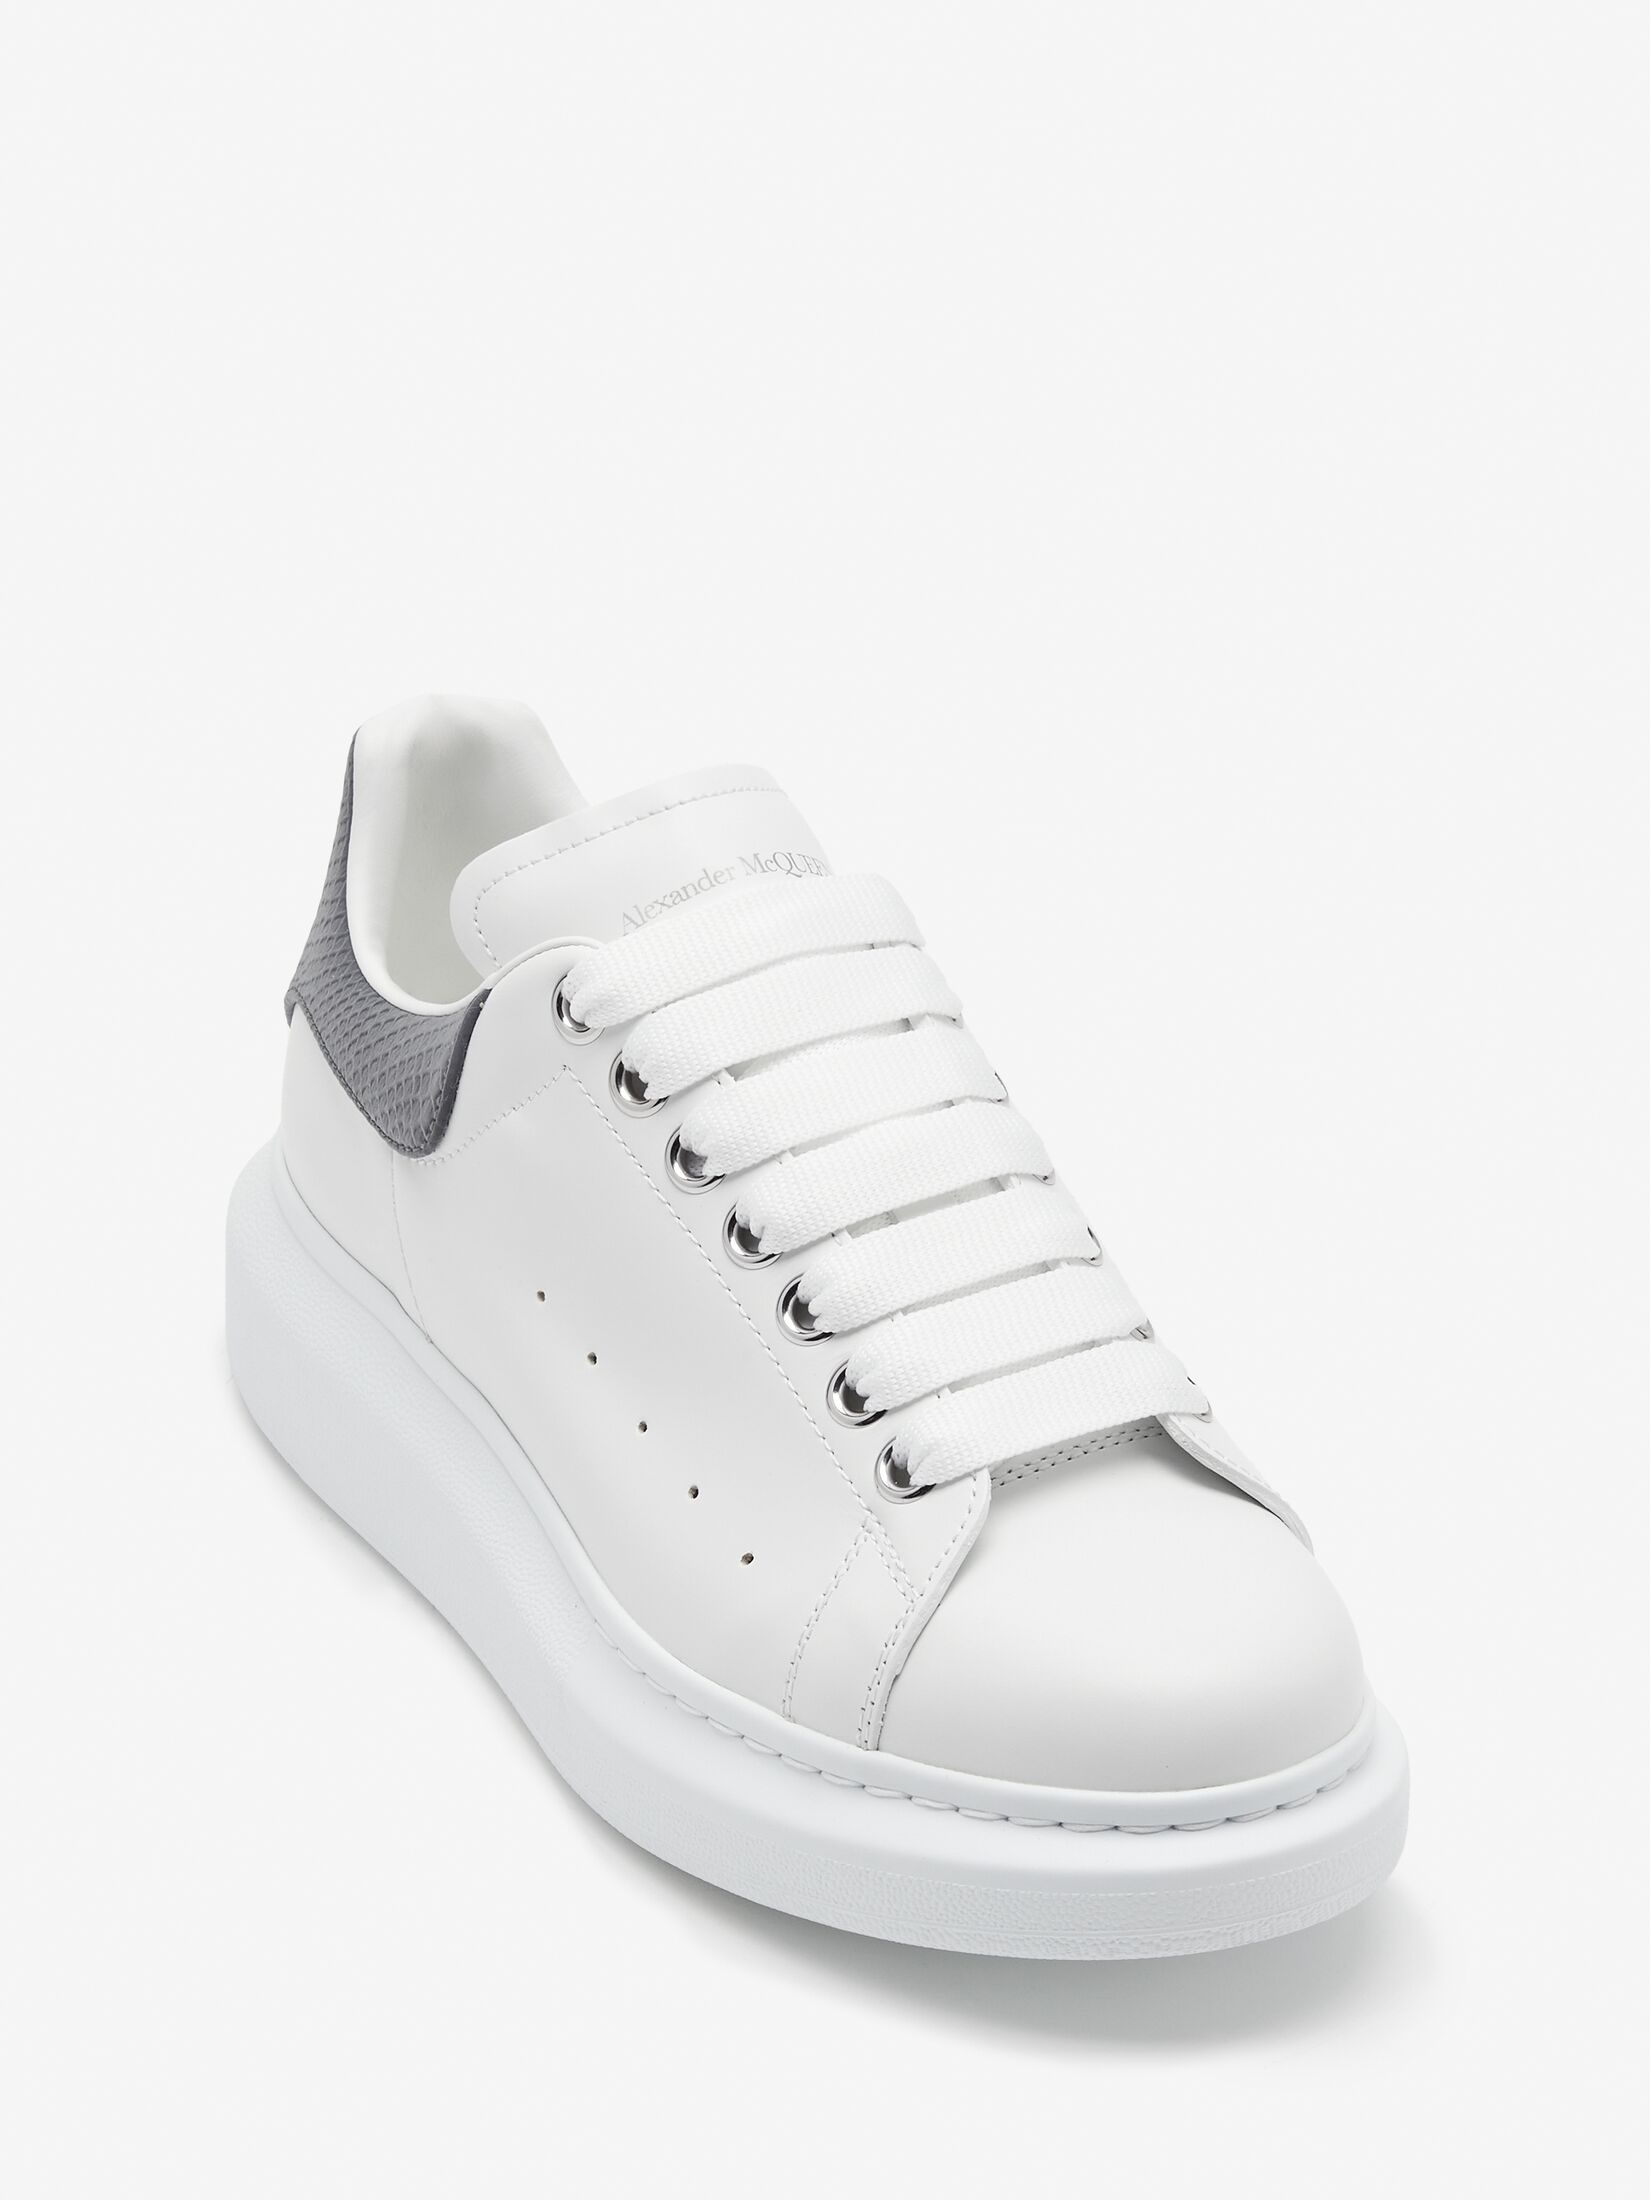 Women's Oversized Sneaker in White/grey - 5